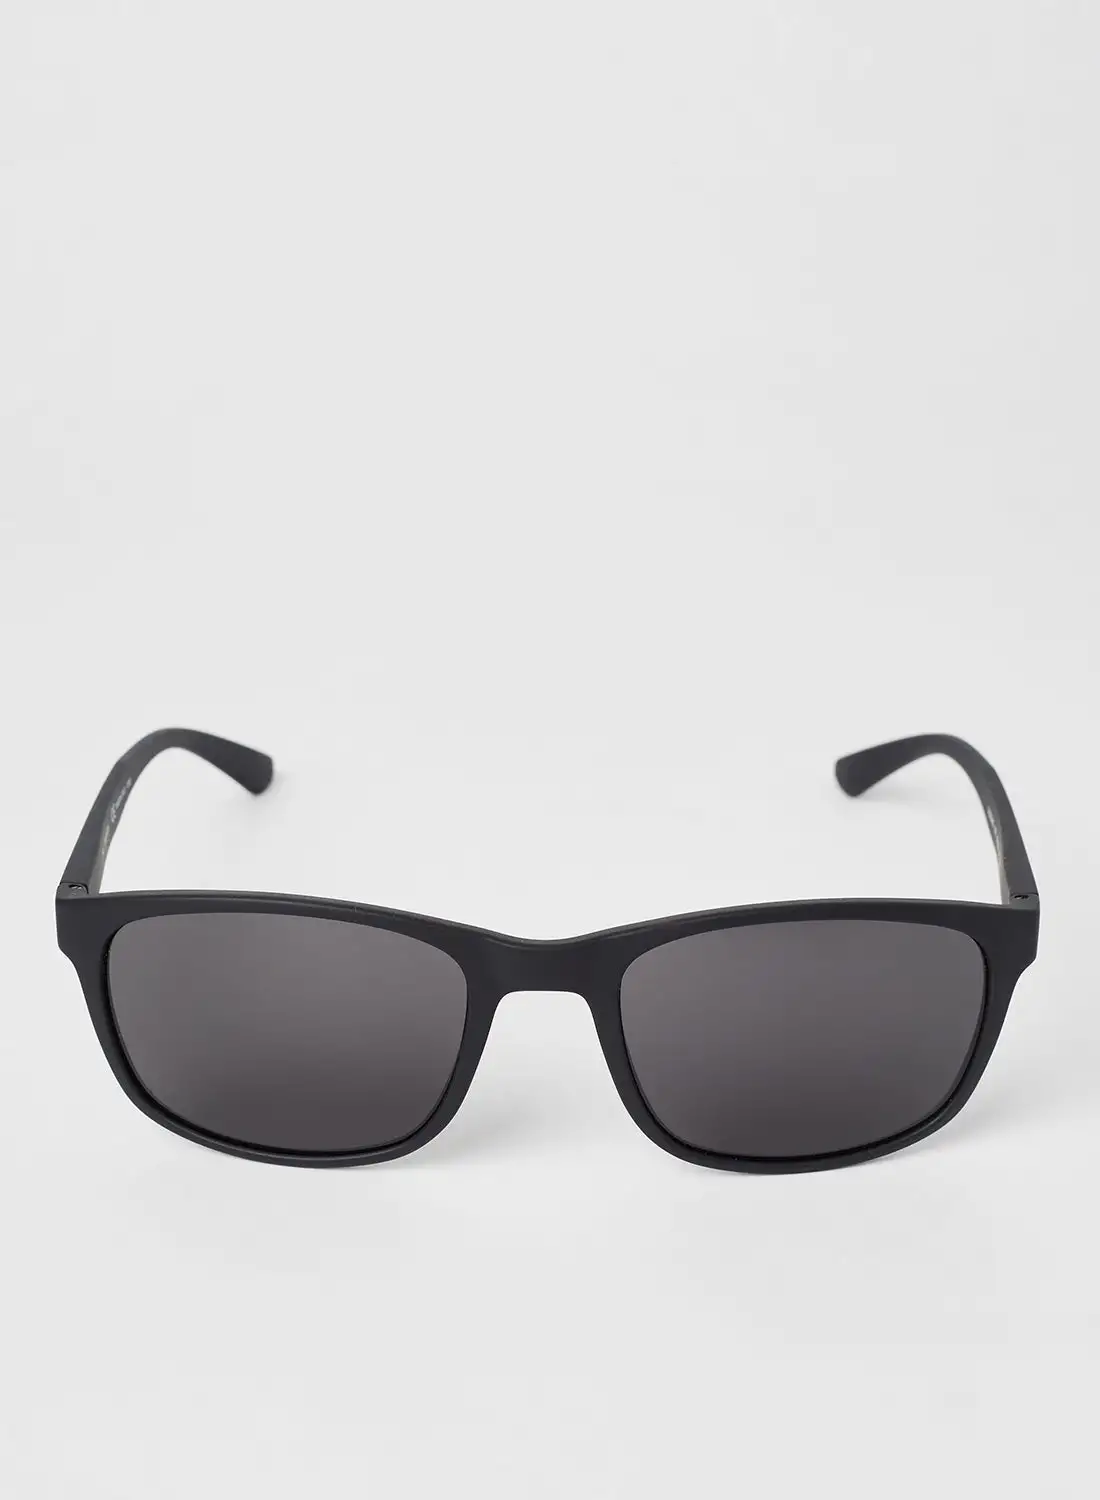 نظارة شمسية كالفين كلاين بإطار مستطيل كامل الحواف للرجال - مقاس العدسة: 56 مم